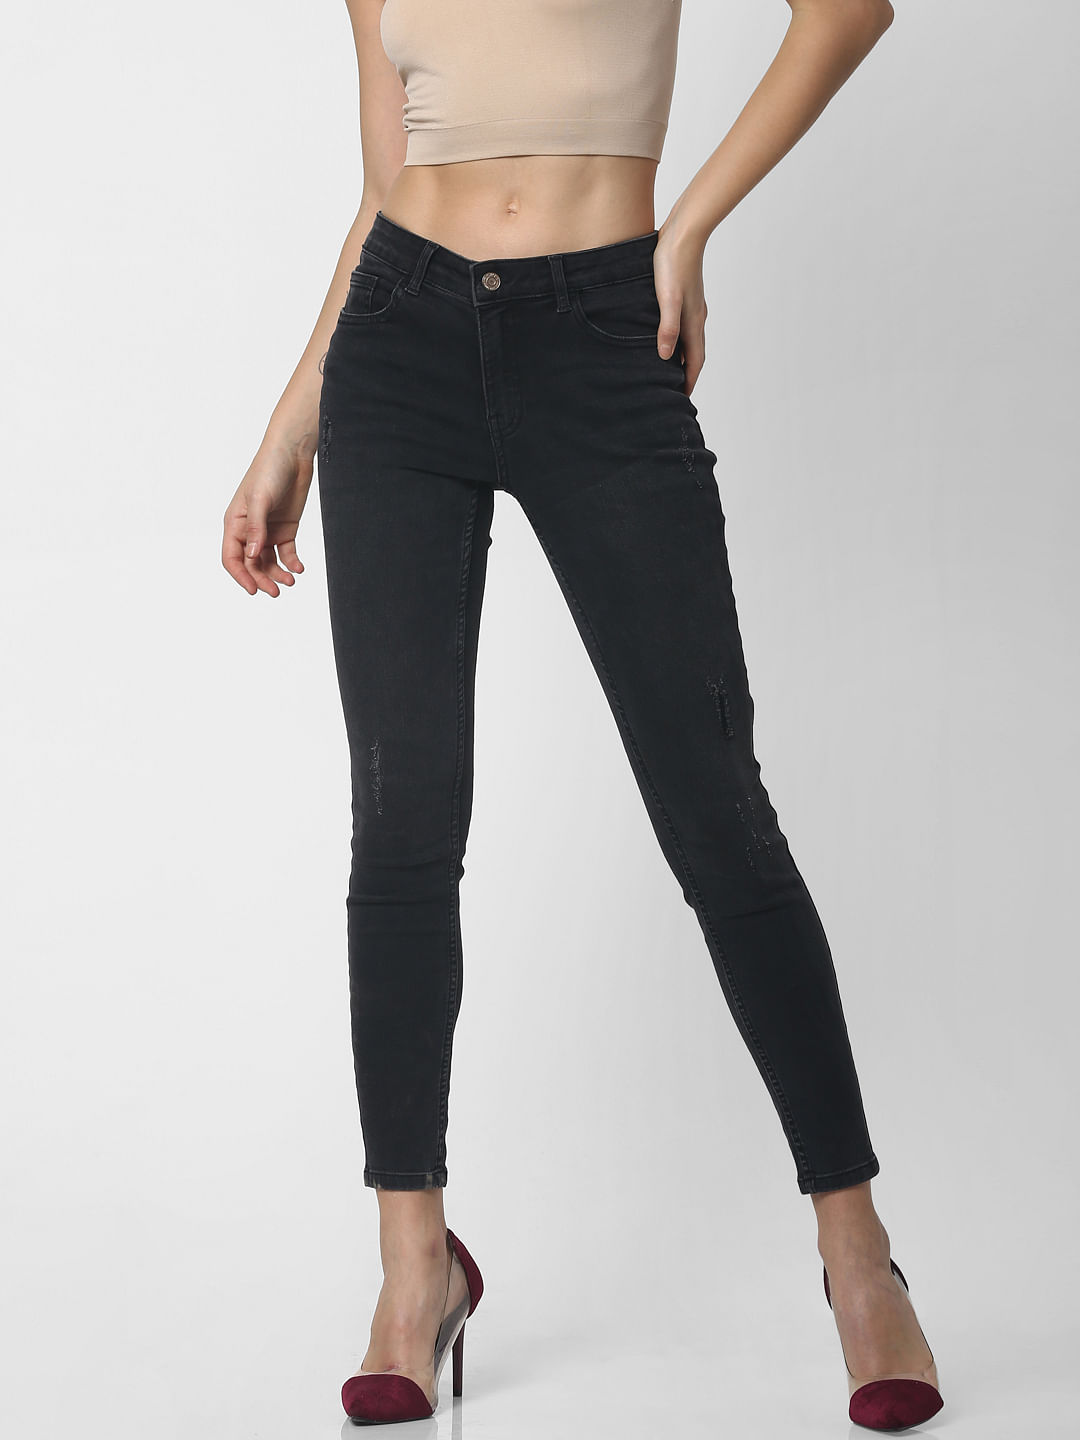 black jeans for girl